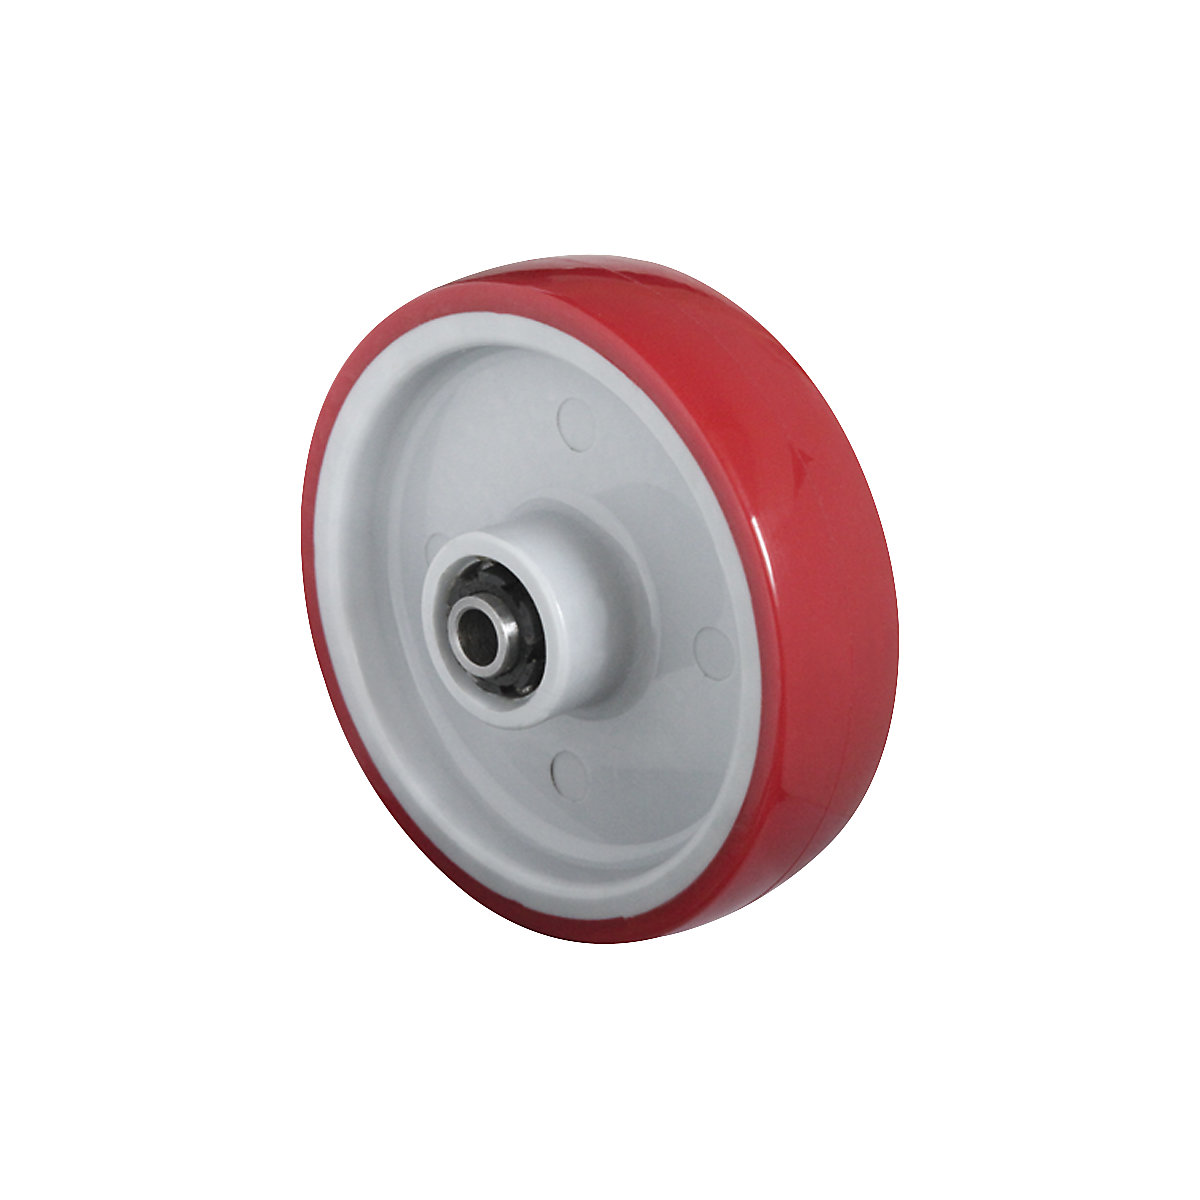 Roue en PU rouge sur jante en polyamide, moyeu lisse en inox, à partir de 2 pièces, Ø x largeur roue 200 x 50 mm-2